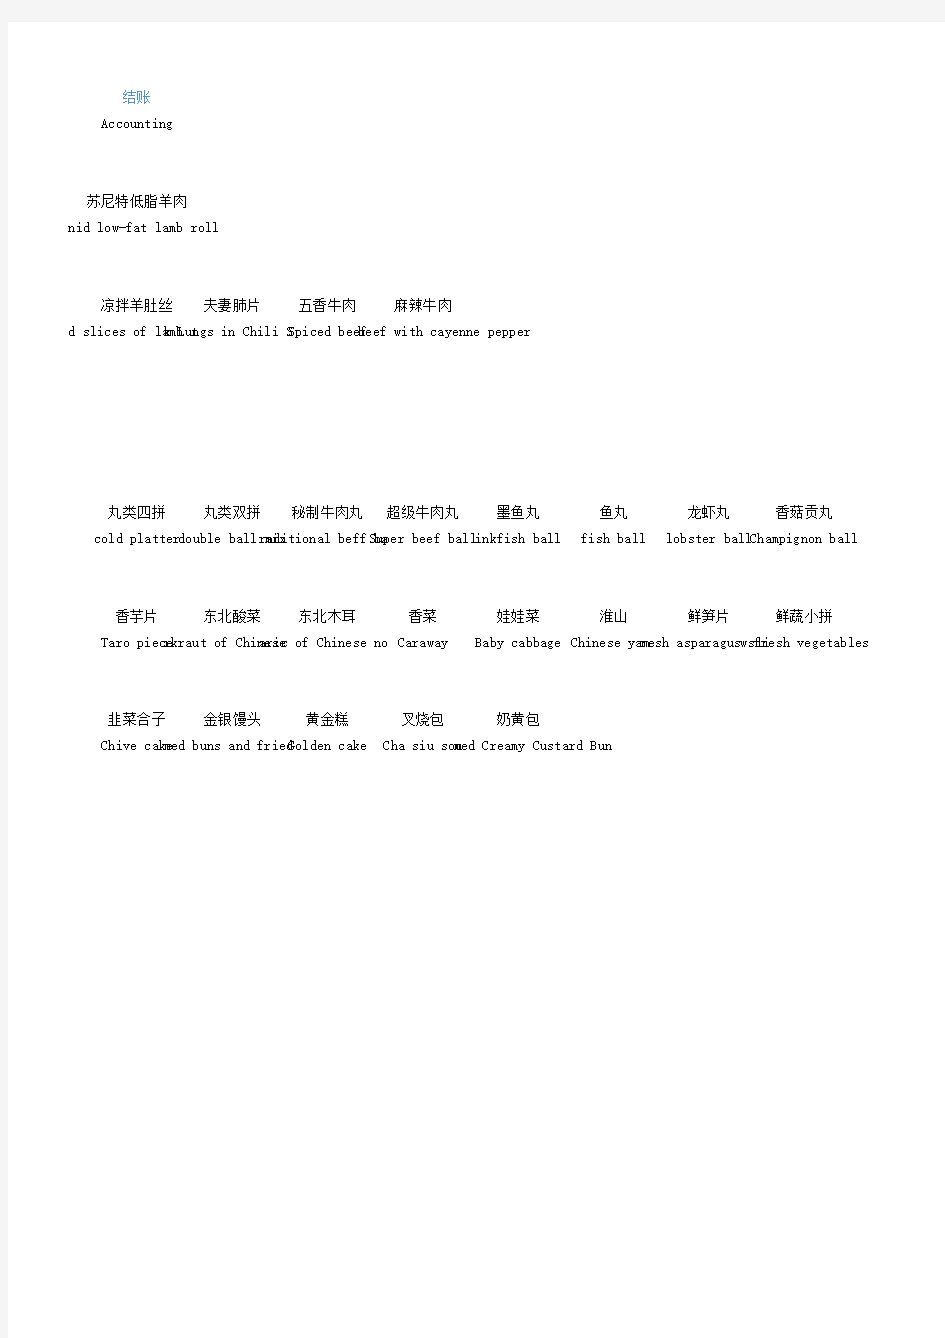 餐饮业火锅菜单中英文参考对照表MENU